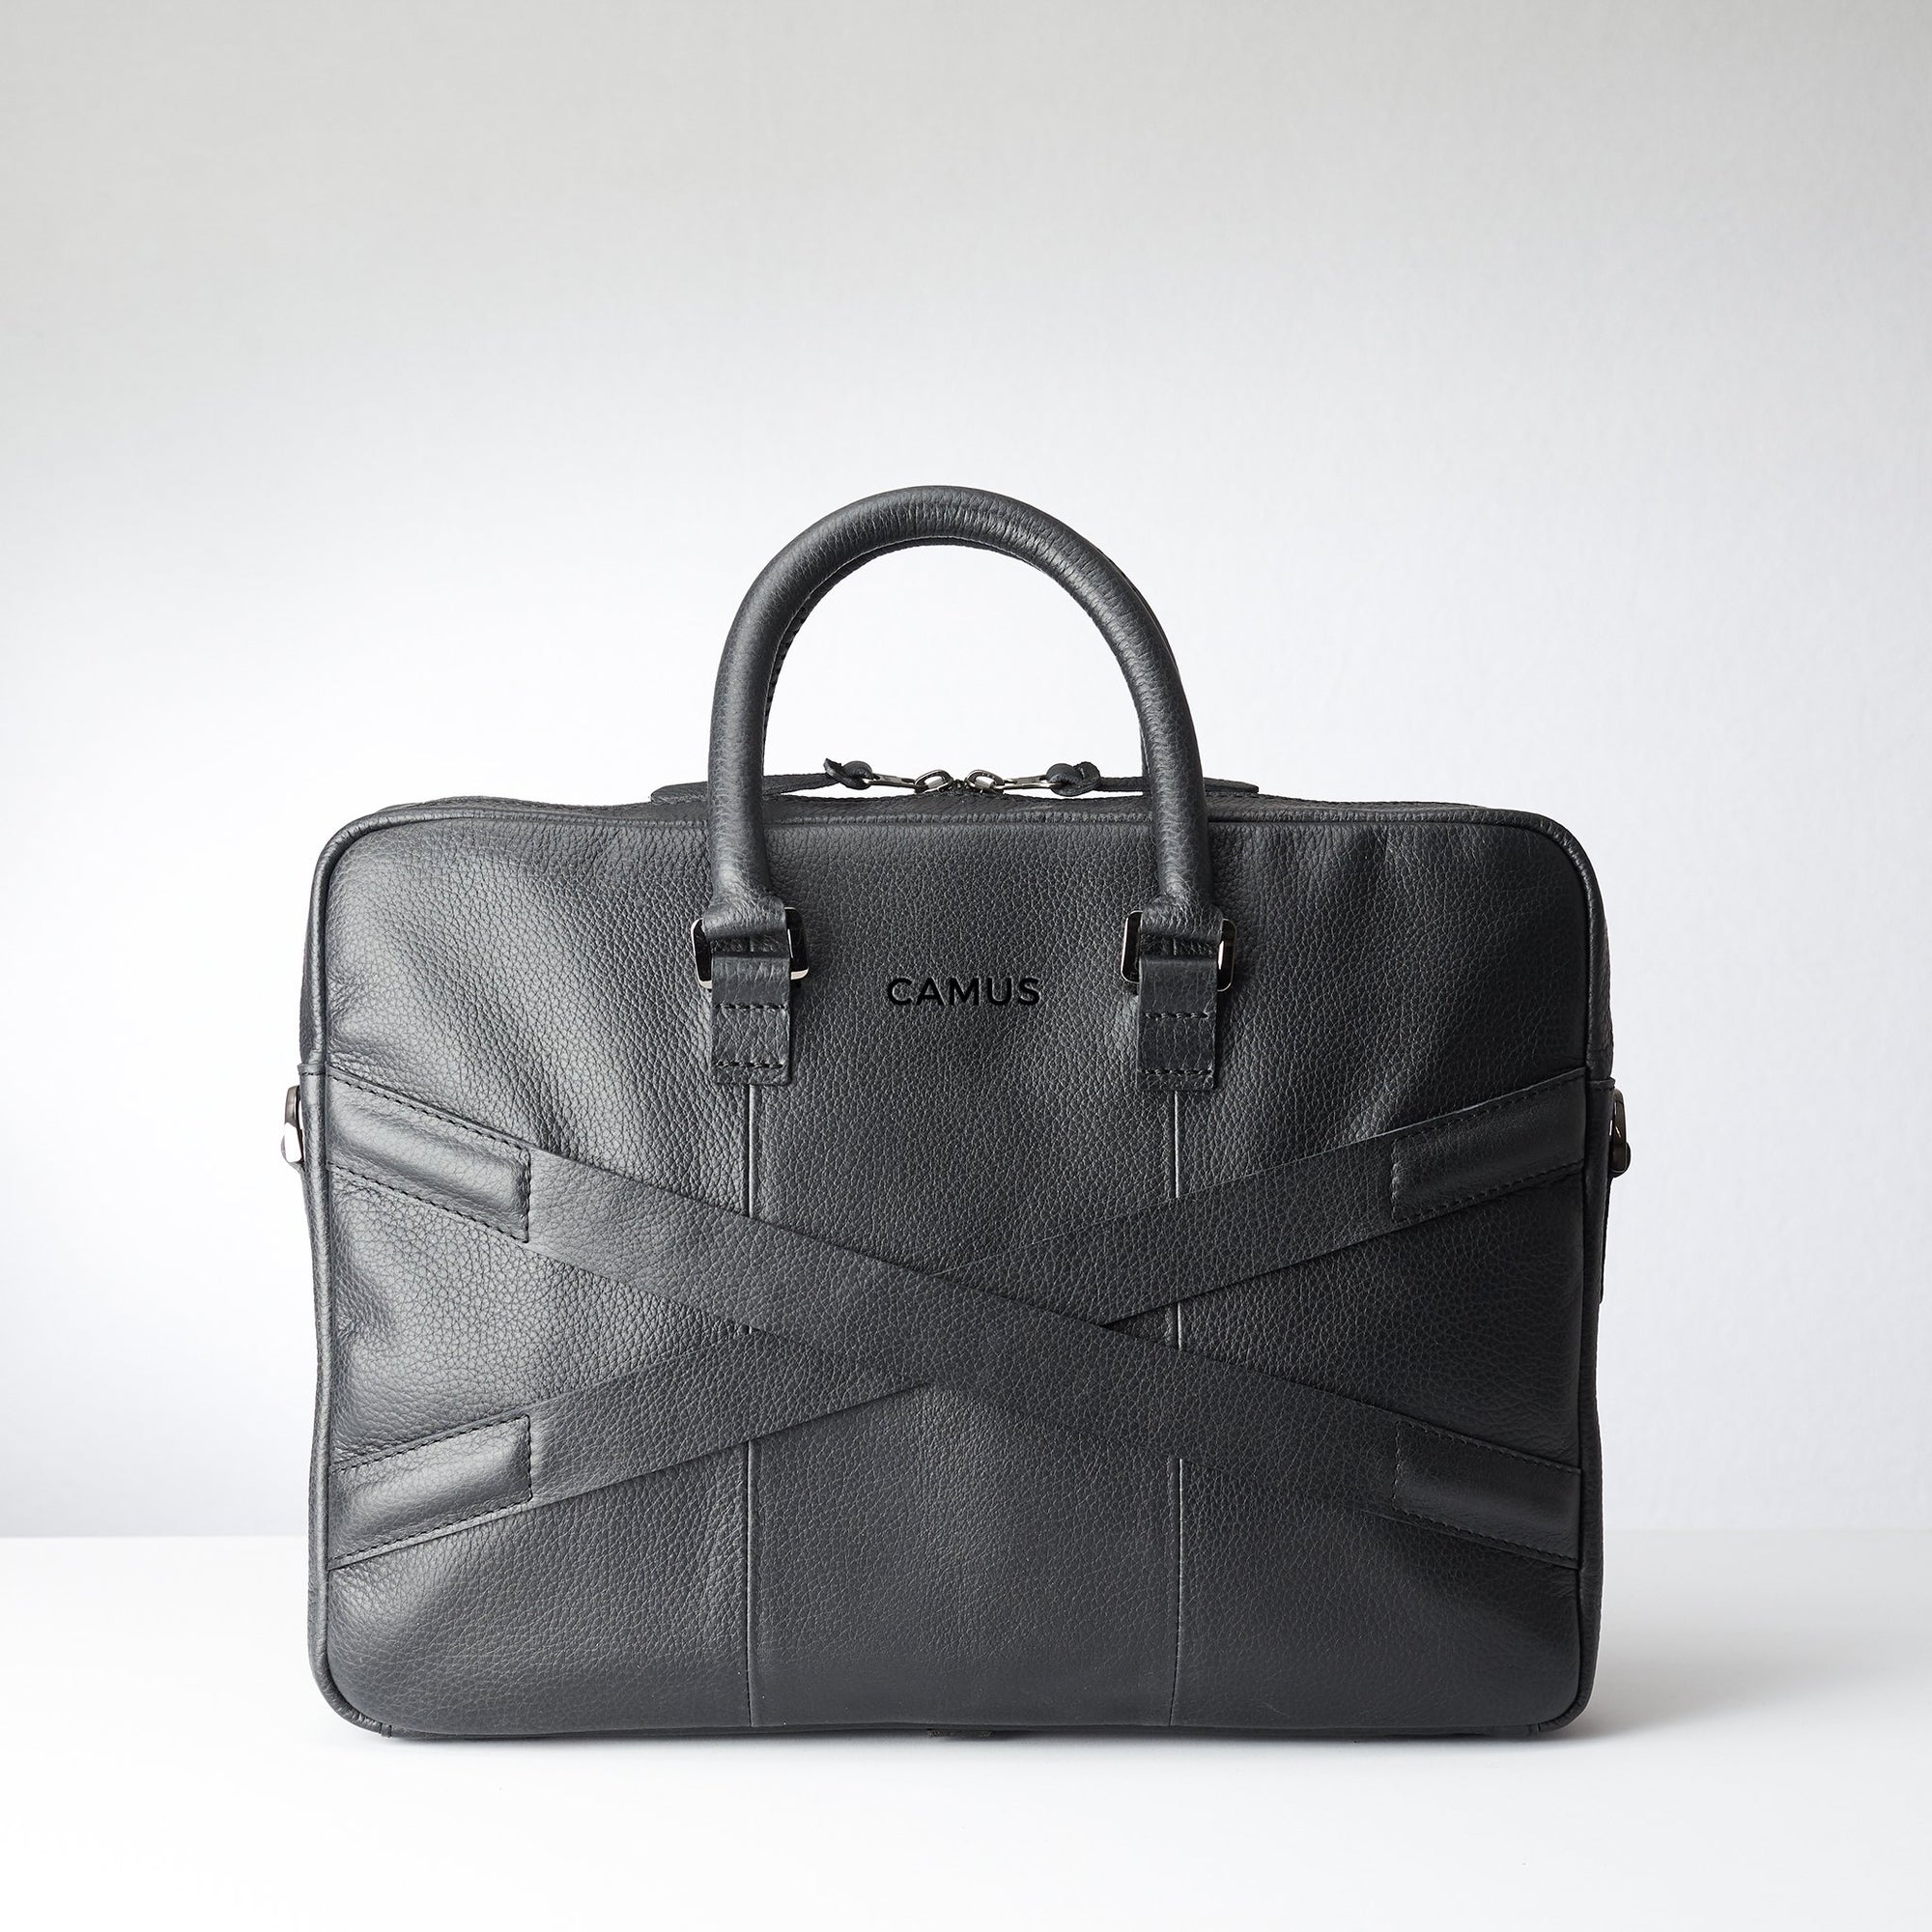 Back and luggage strap for slim portfolio .Black leather briefcase laptop bag for men. Gazeli laptop briefcase by Capra Leather.